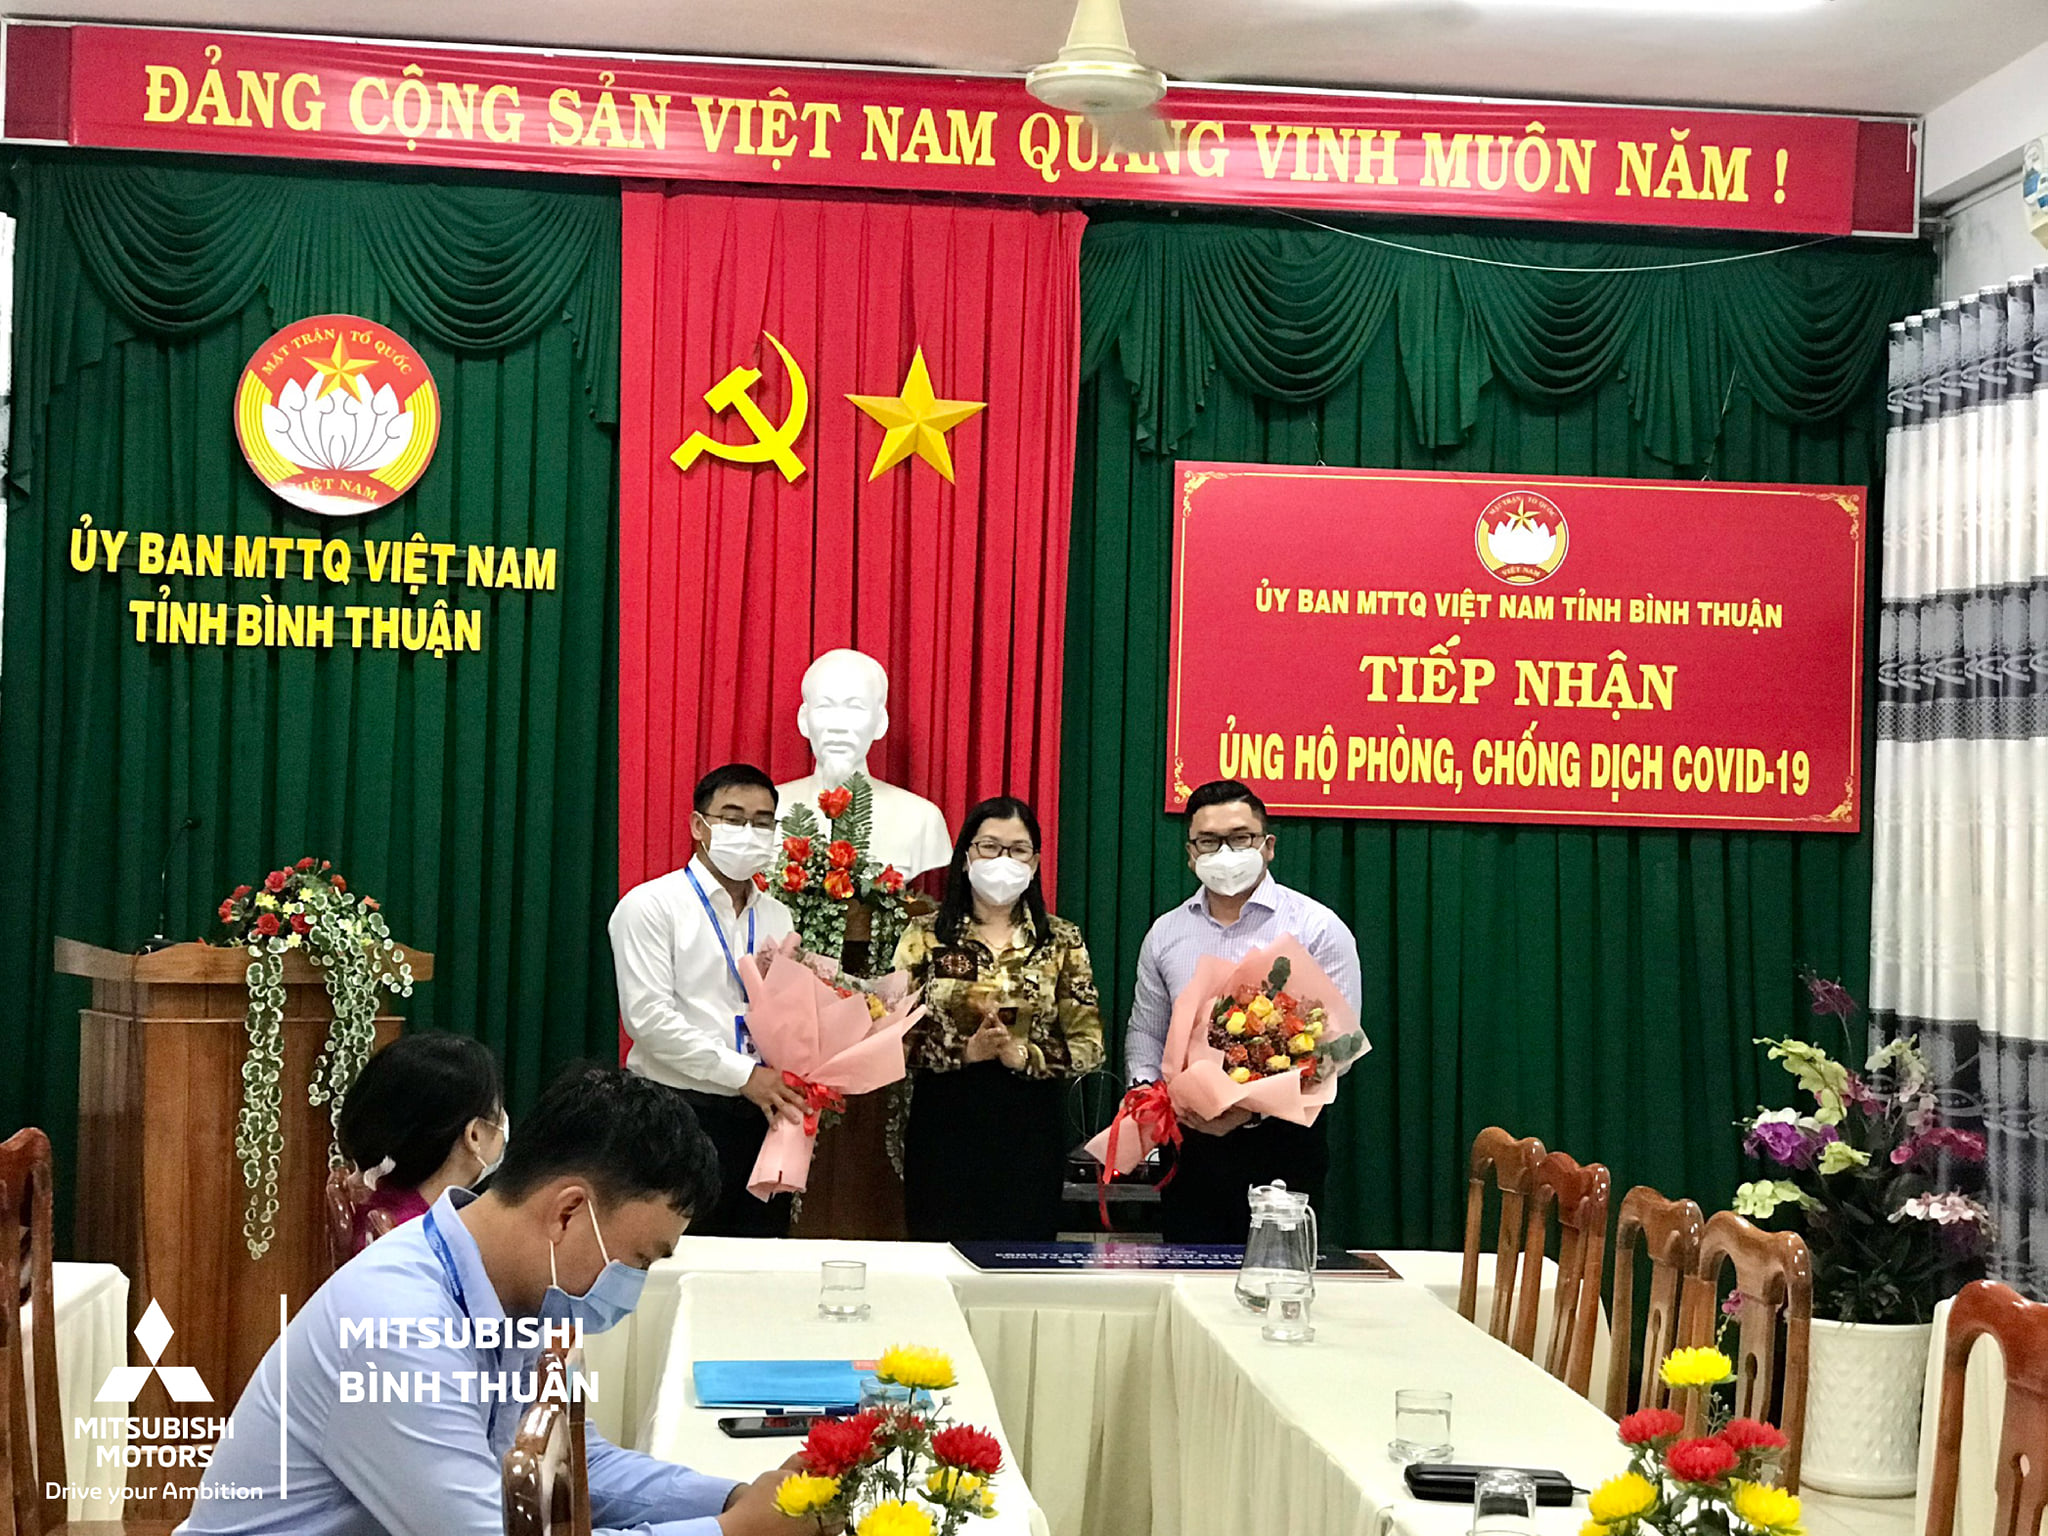 Ông Nguyễn Lê Nhật Quang nhận hoa cảm ơn từ bà Bố Thị Xuân Linh